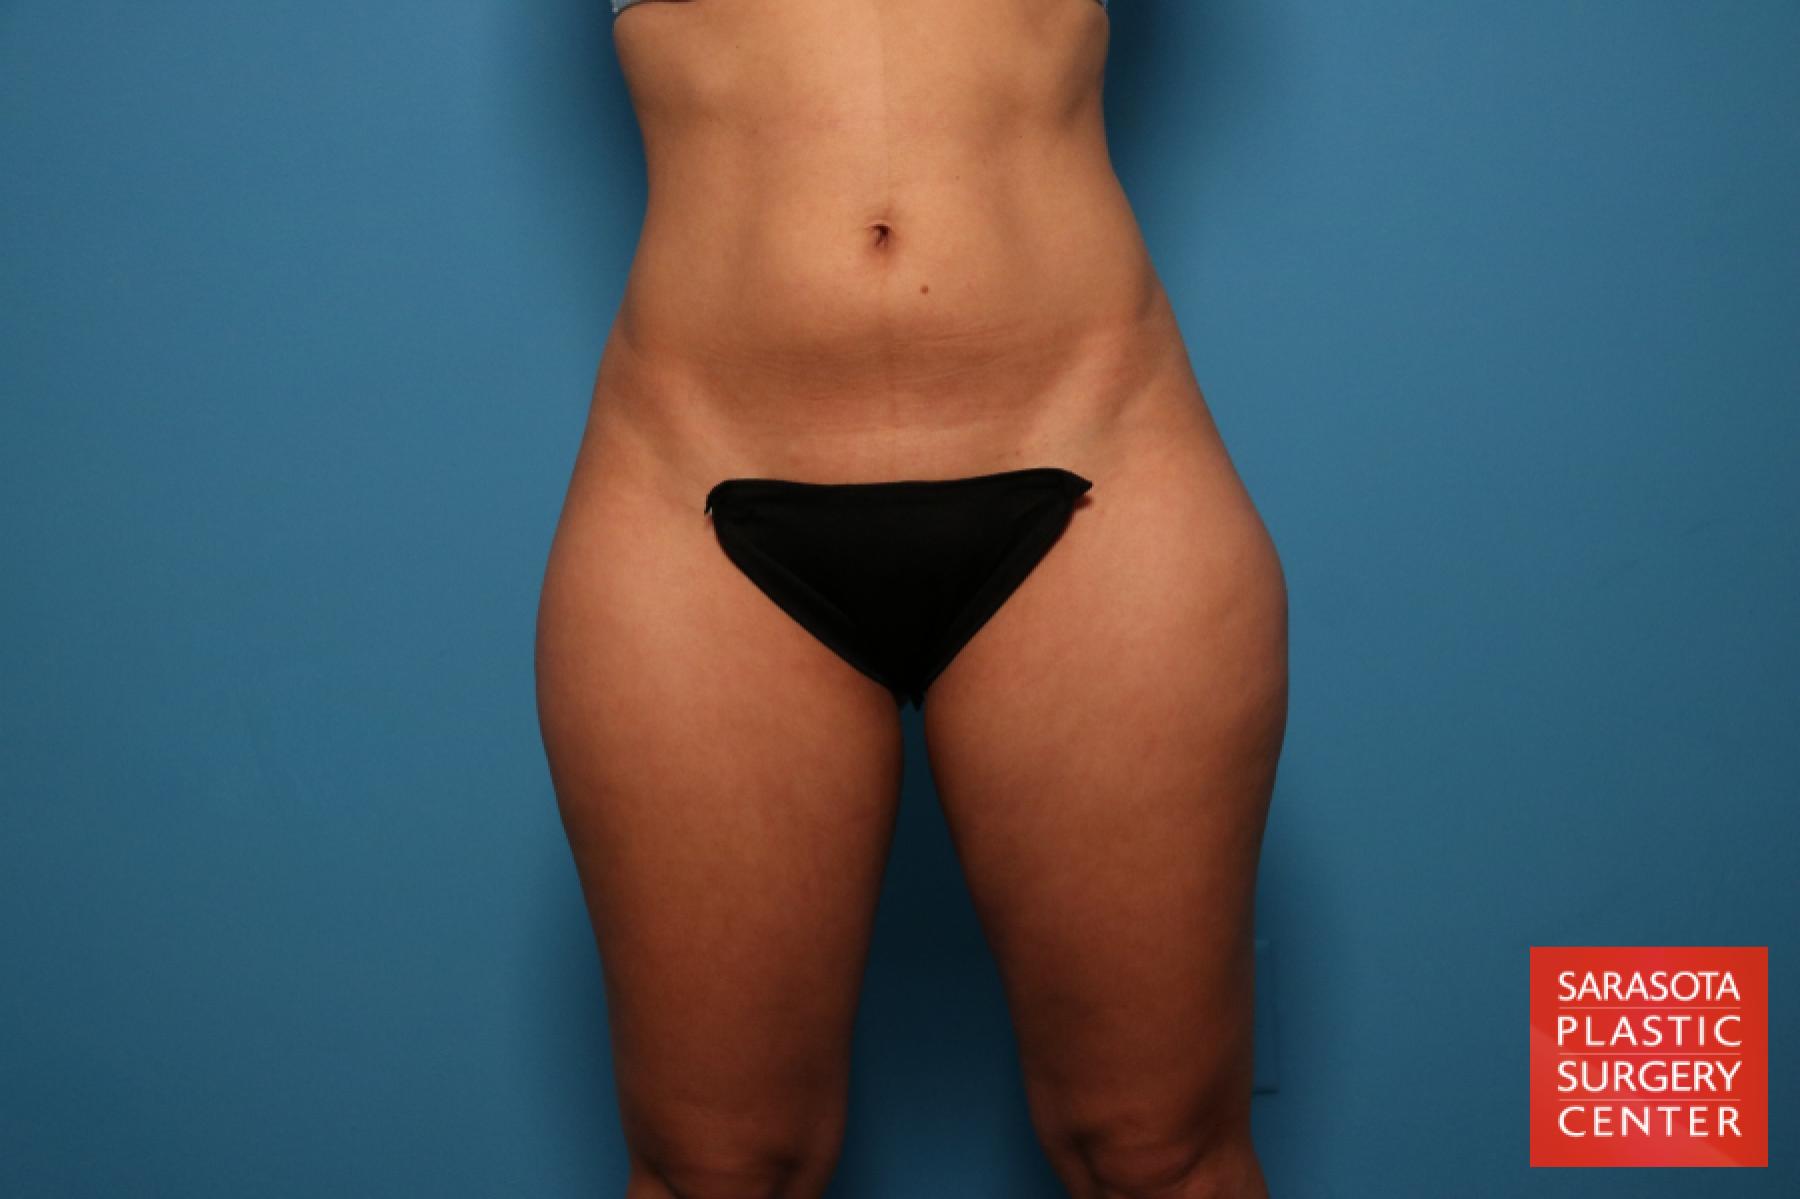 Liposuction: Patient 13 - Before 1